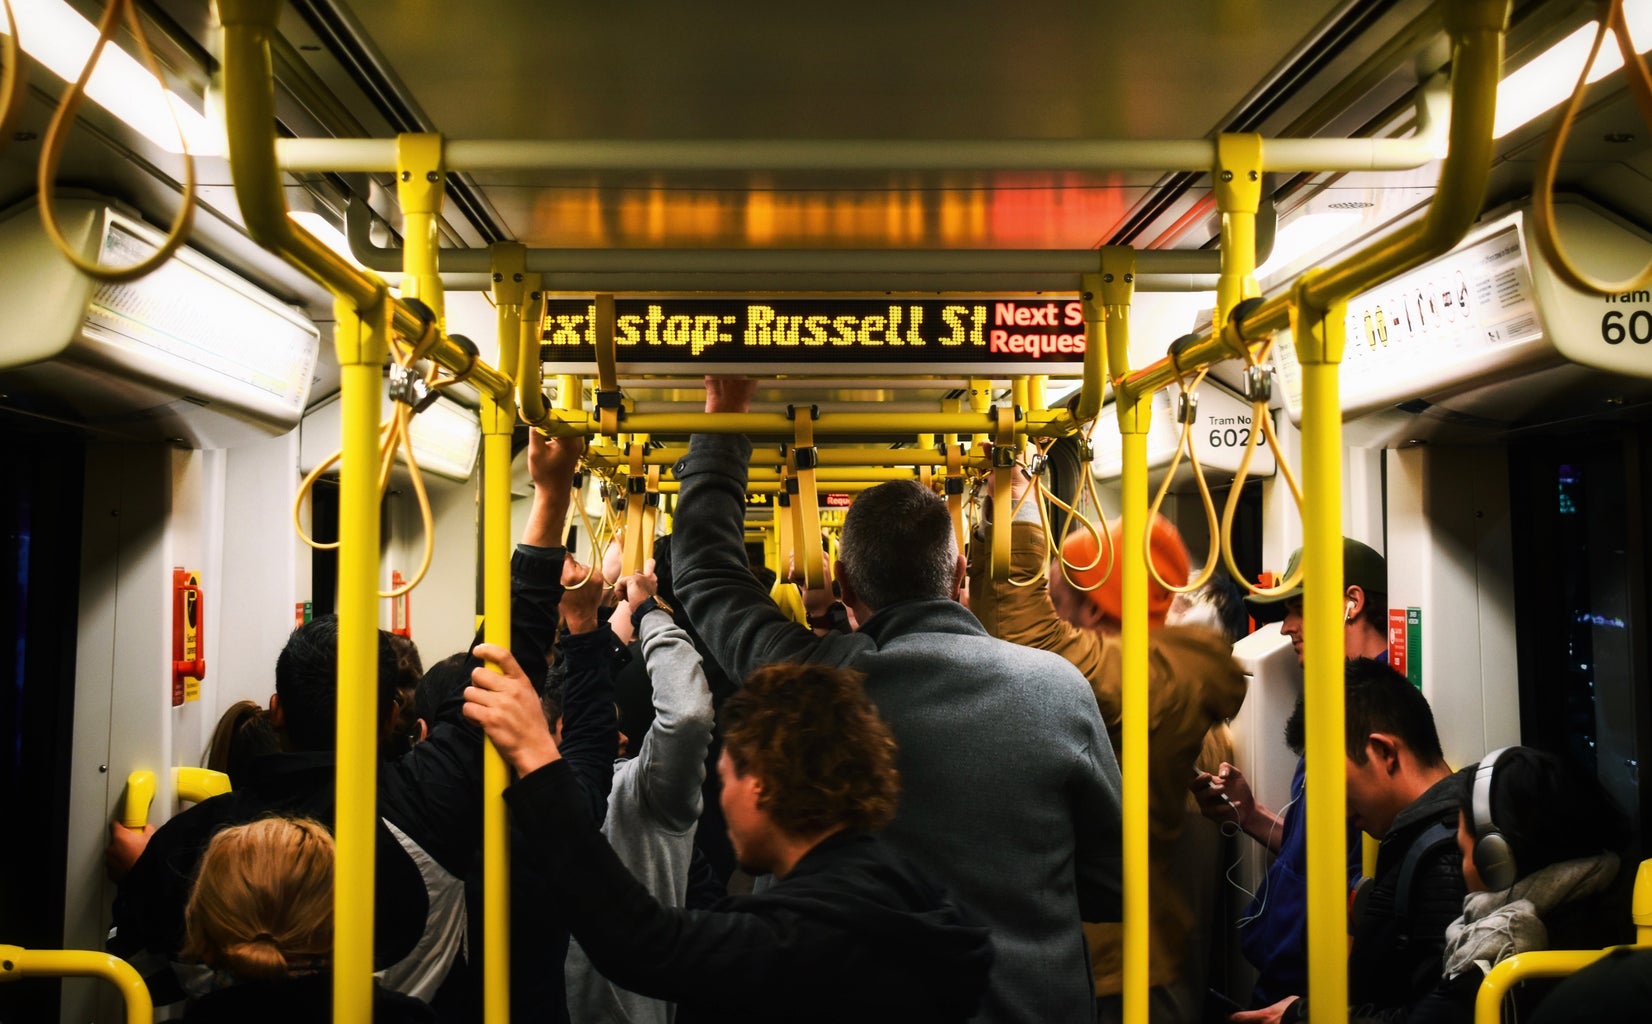 crowded subway car